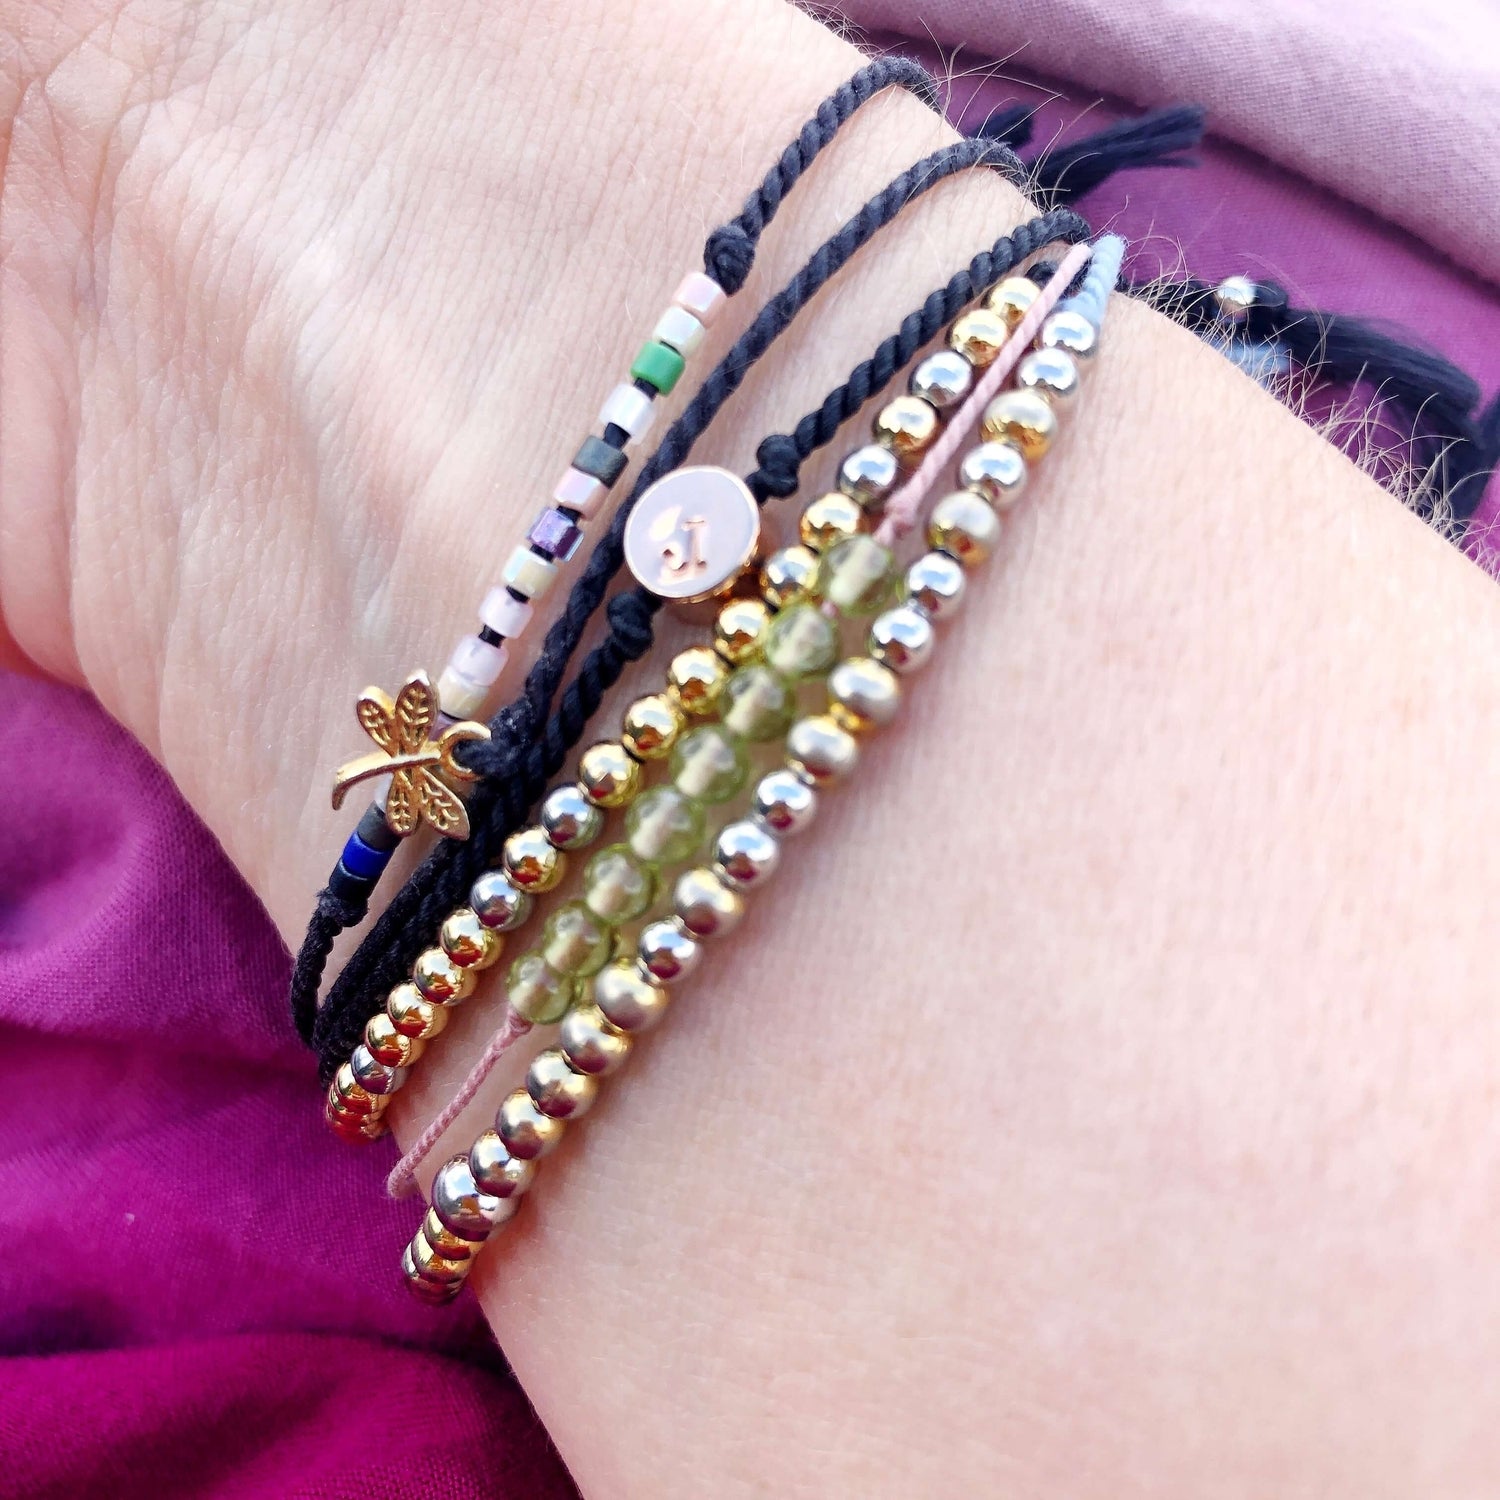 6 beaded and charm bracelets on a woman&#39;s wrist